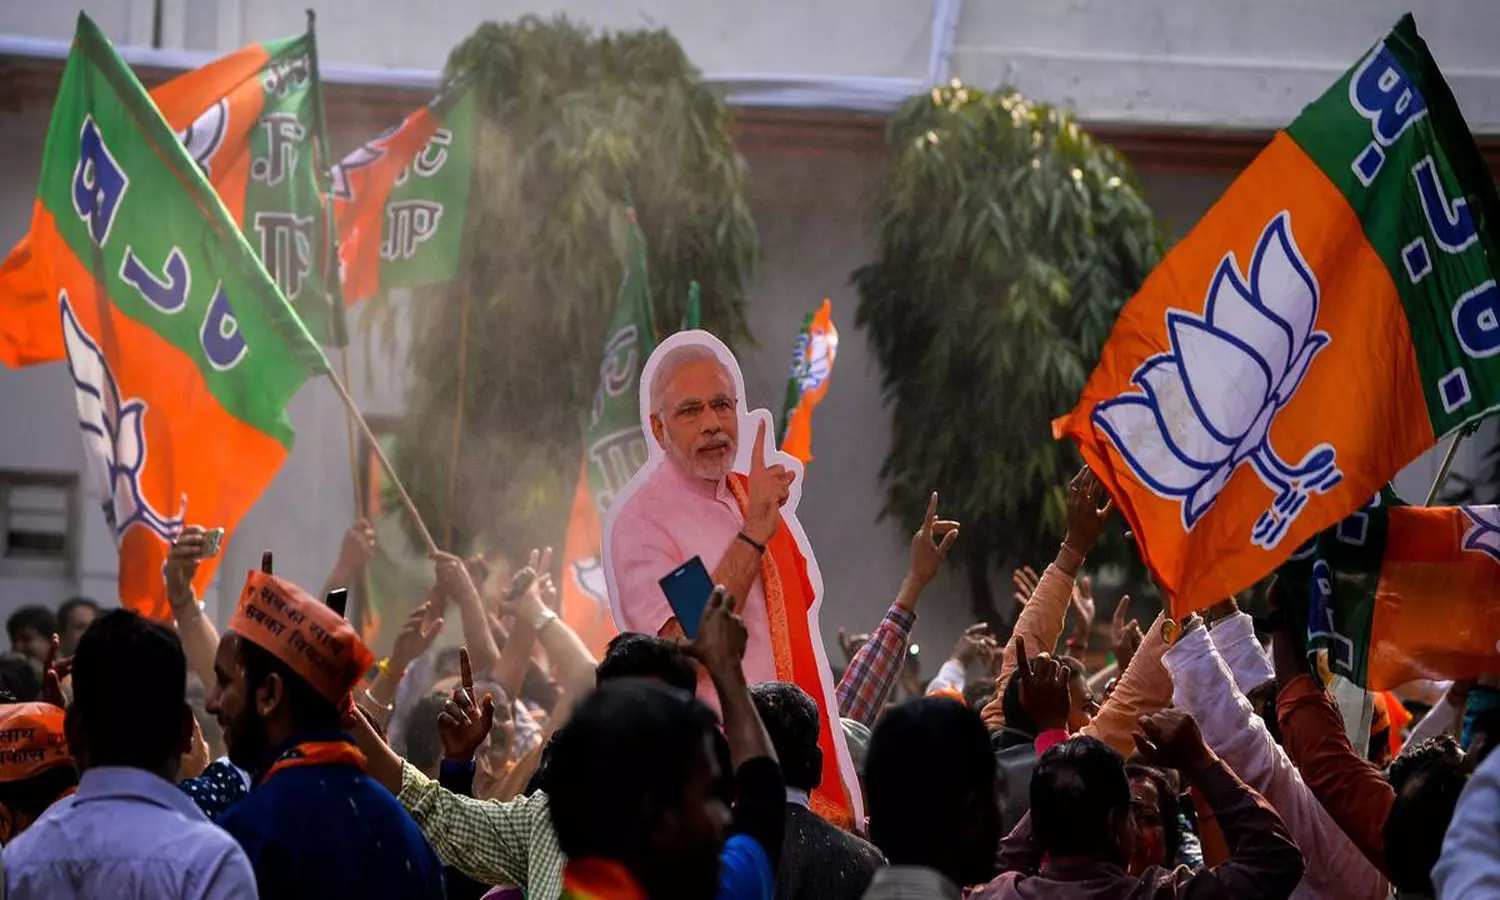 असम विधानसभा चुनाव रिजल्ट 2021: BJP की प्रचंड वापसी, कांग्रेस का हुआ बुरा हाल